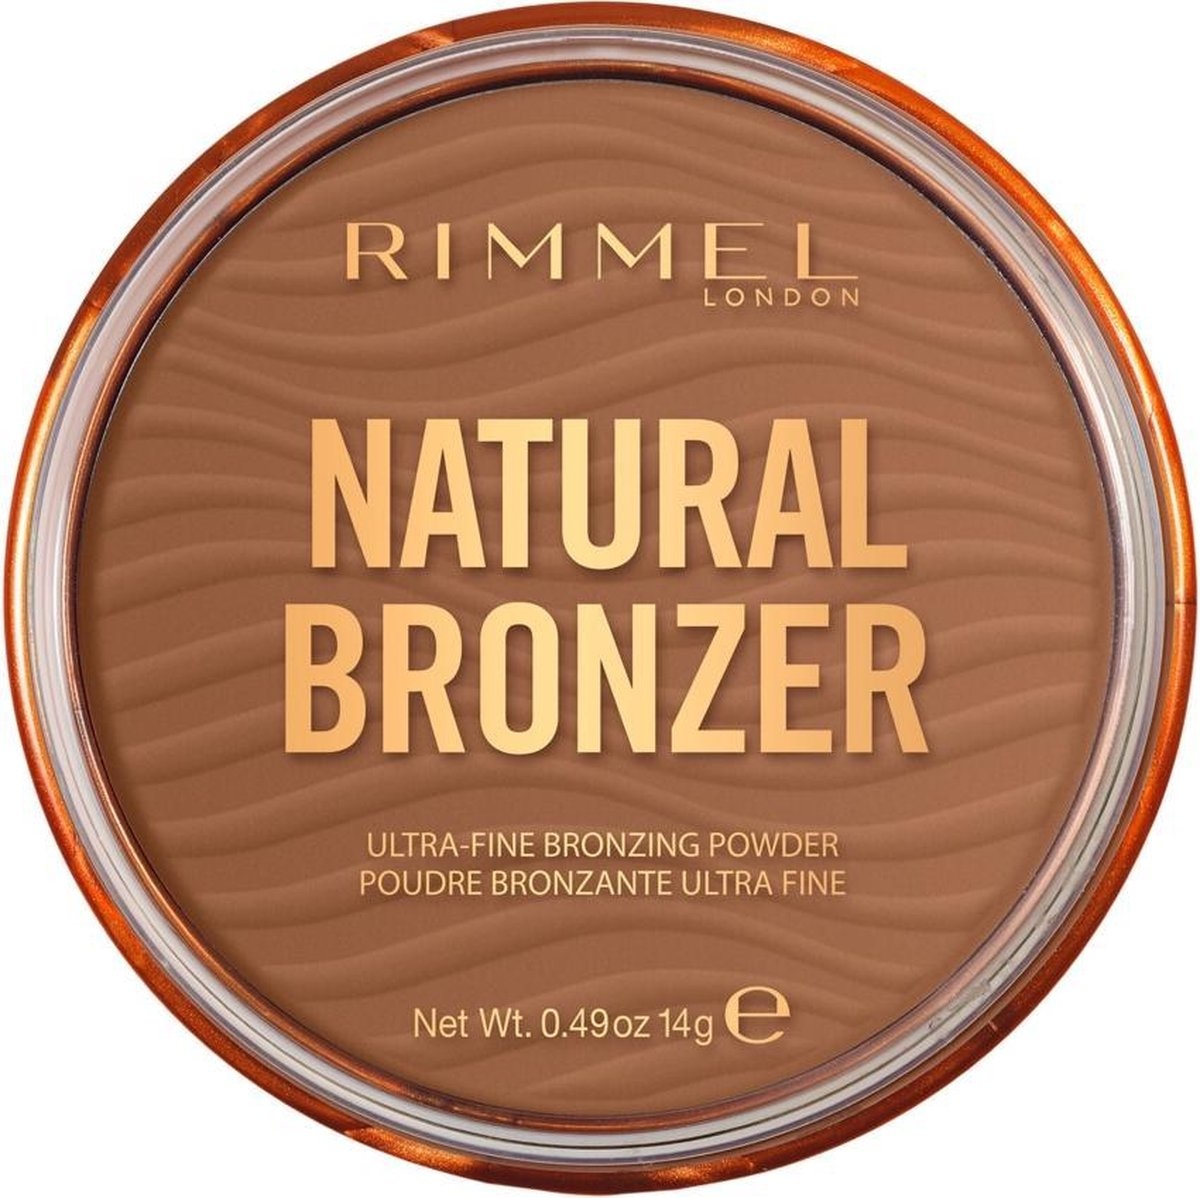 Rimmel London Natural Bronzer Ultra-Fine Rimmel London Natural Bronzer Ultra-Fine Bronzing Powder - 002 Sunbronze - Packaging damagedPowder - 002 Sunbronze - Copy